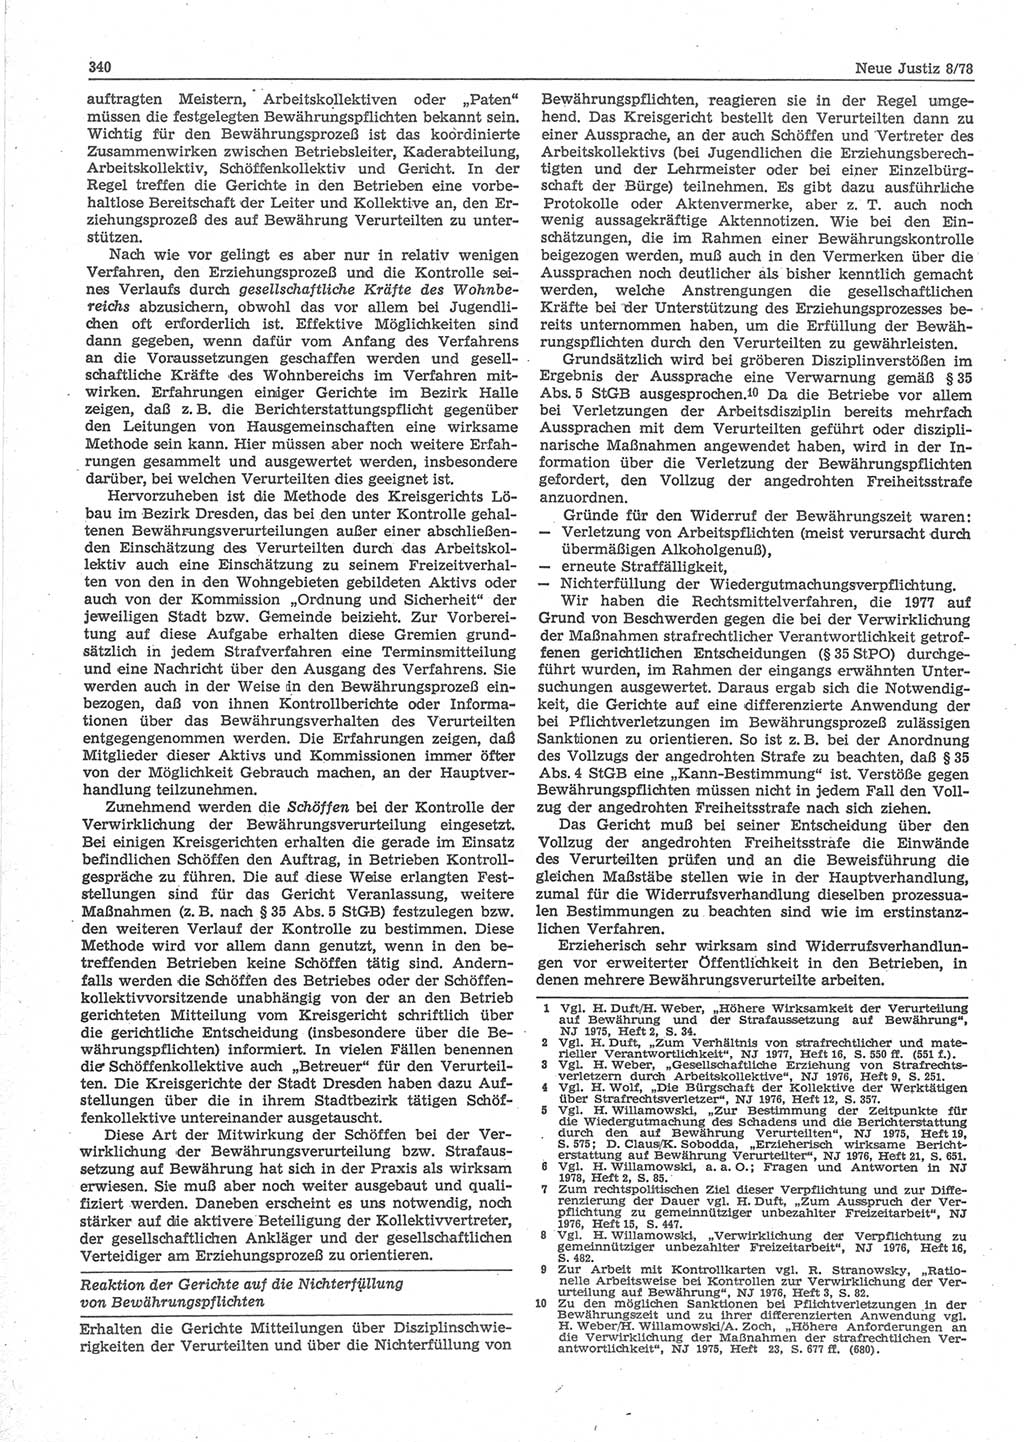 Neue Justiz (NJ), Zeitschrift für sozialistisches Recht und Gesetzlichkeit [Deutsche Demokratische Republik (DDR)], 32. Jahrgang 1978, Seite 340 (NJ DDR 1978, S. 340)